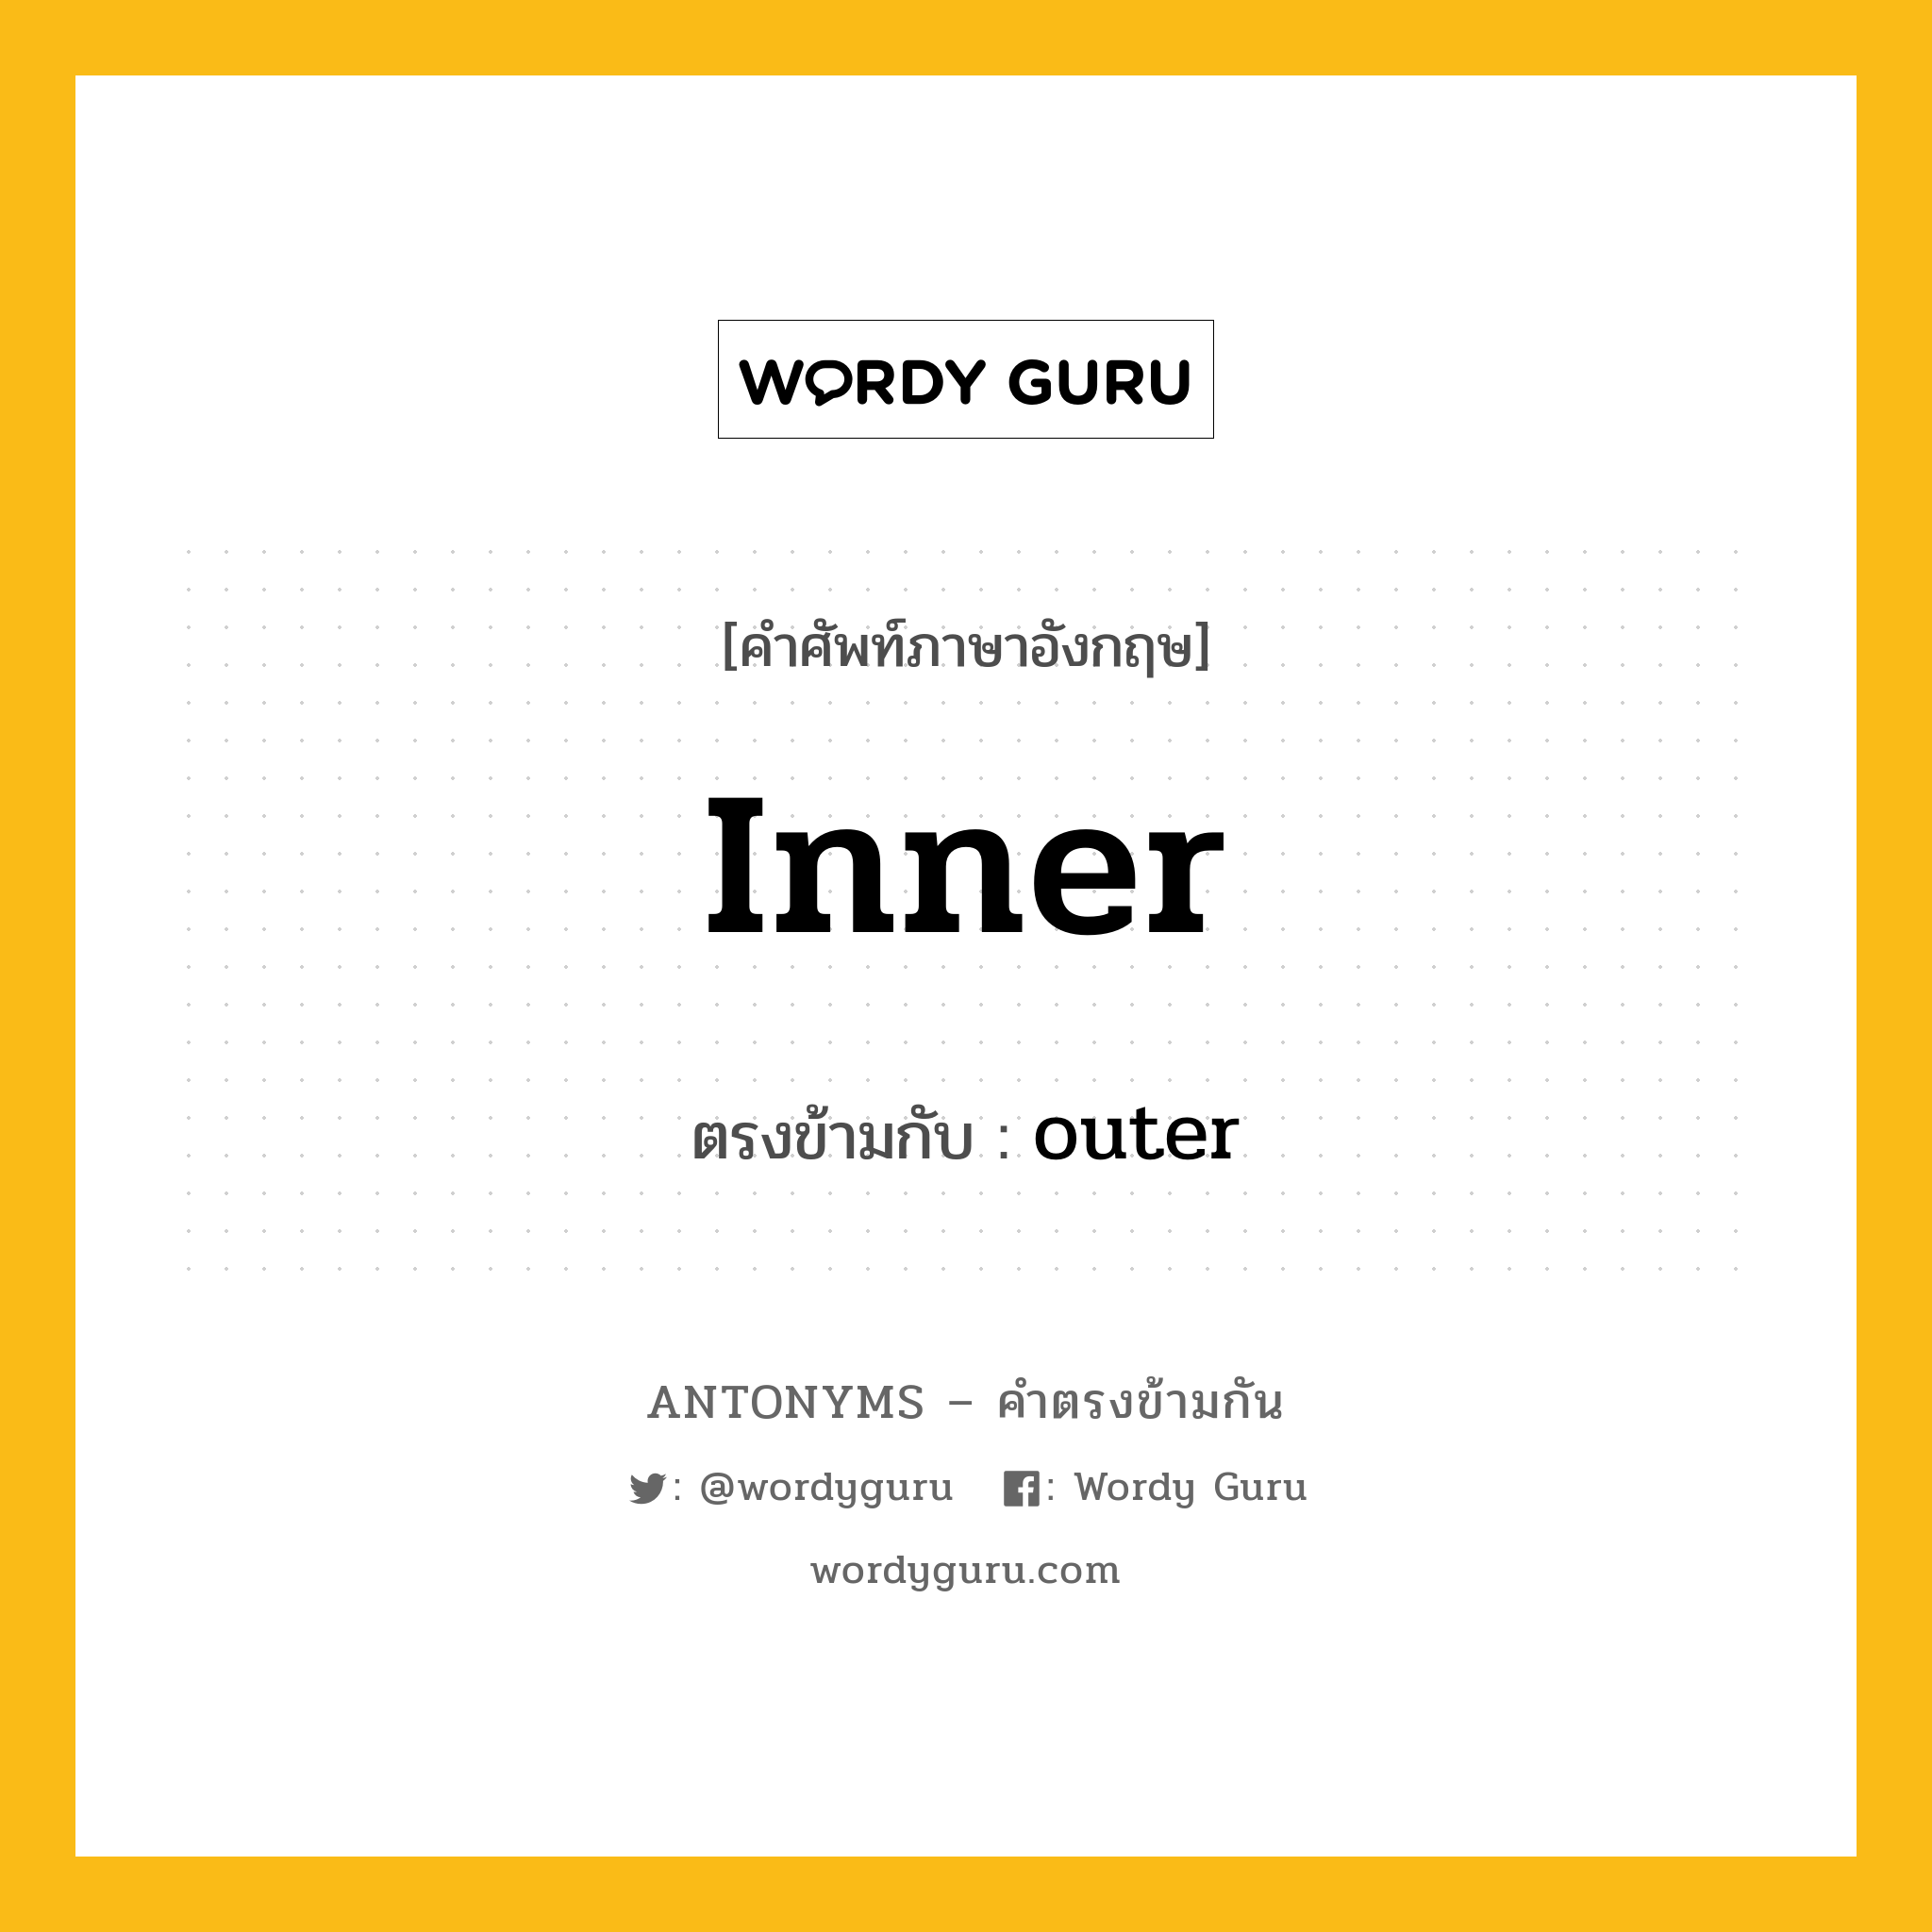 inner เป็นคำตรงข้ามกับคำไหนบ้าง?, คำศัพท์ภาษาอังกฤษ inner ตรงข้ามกับ outer หมวด outer